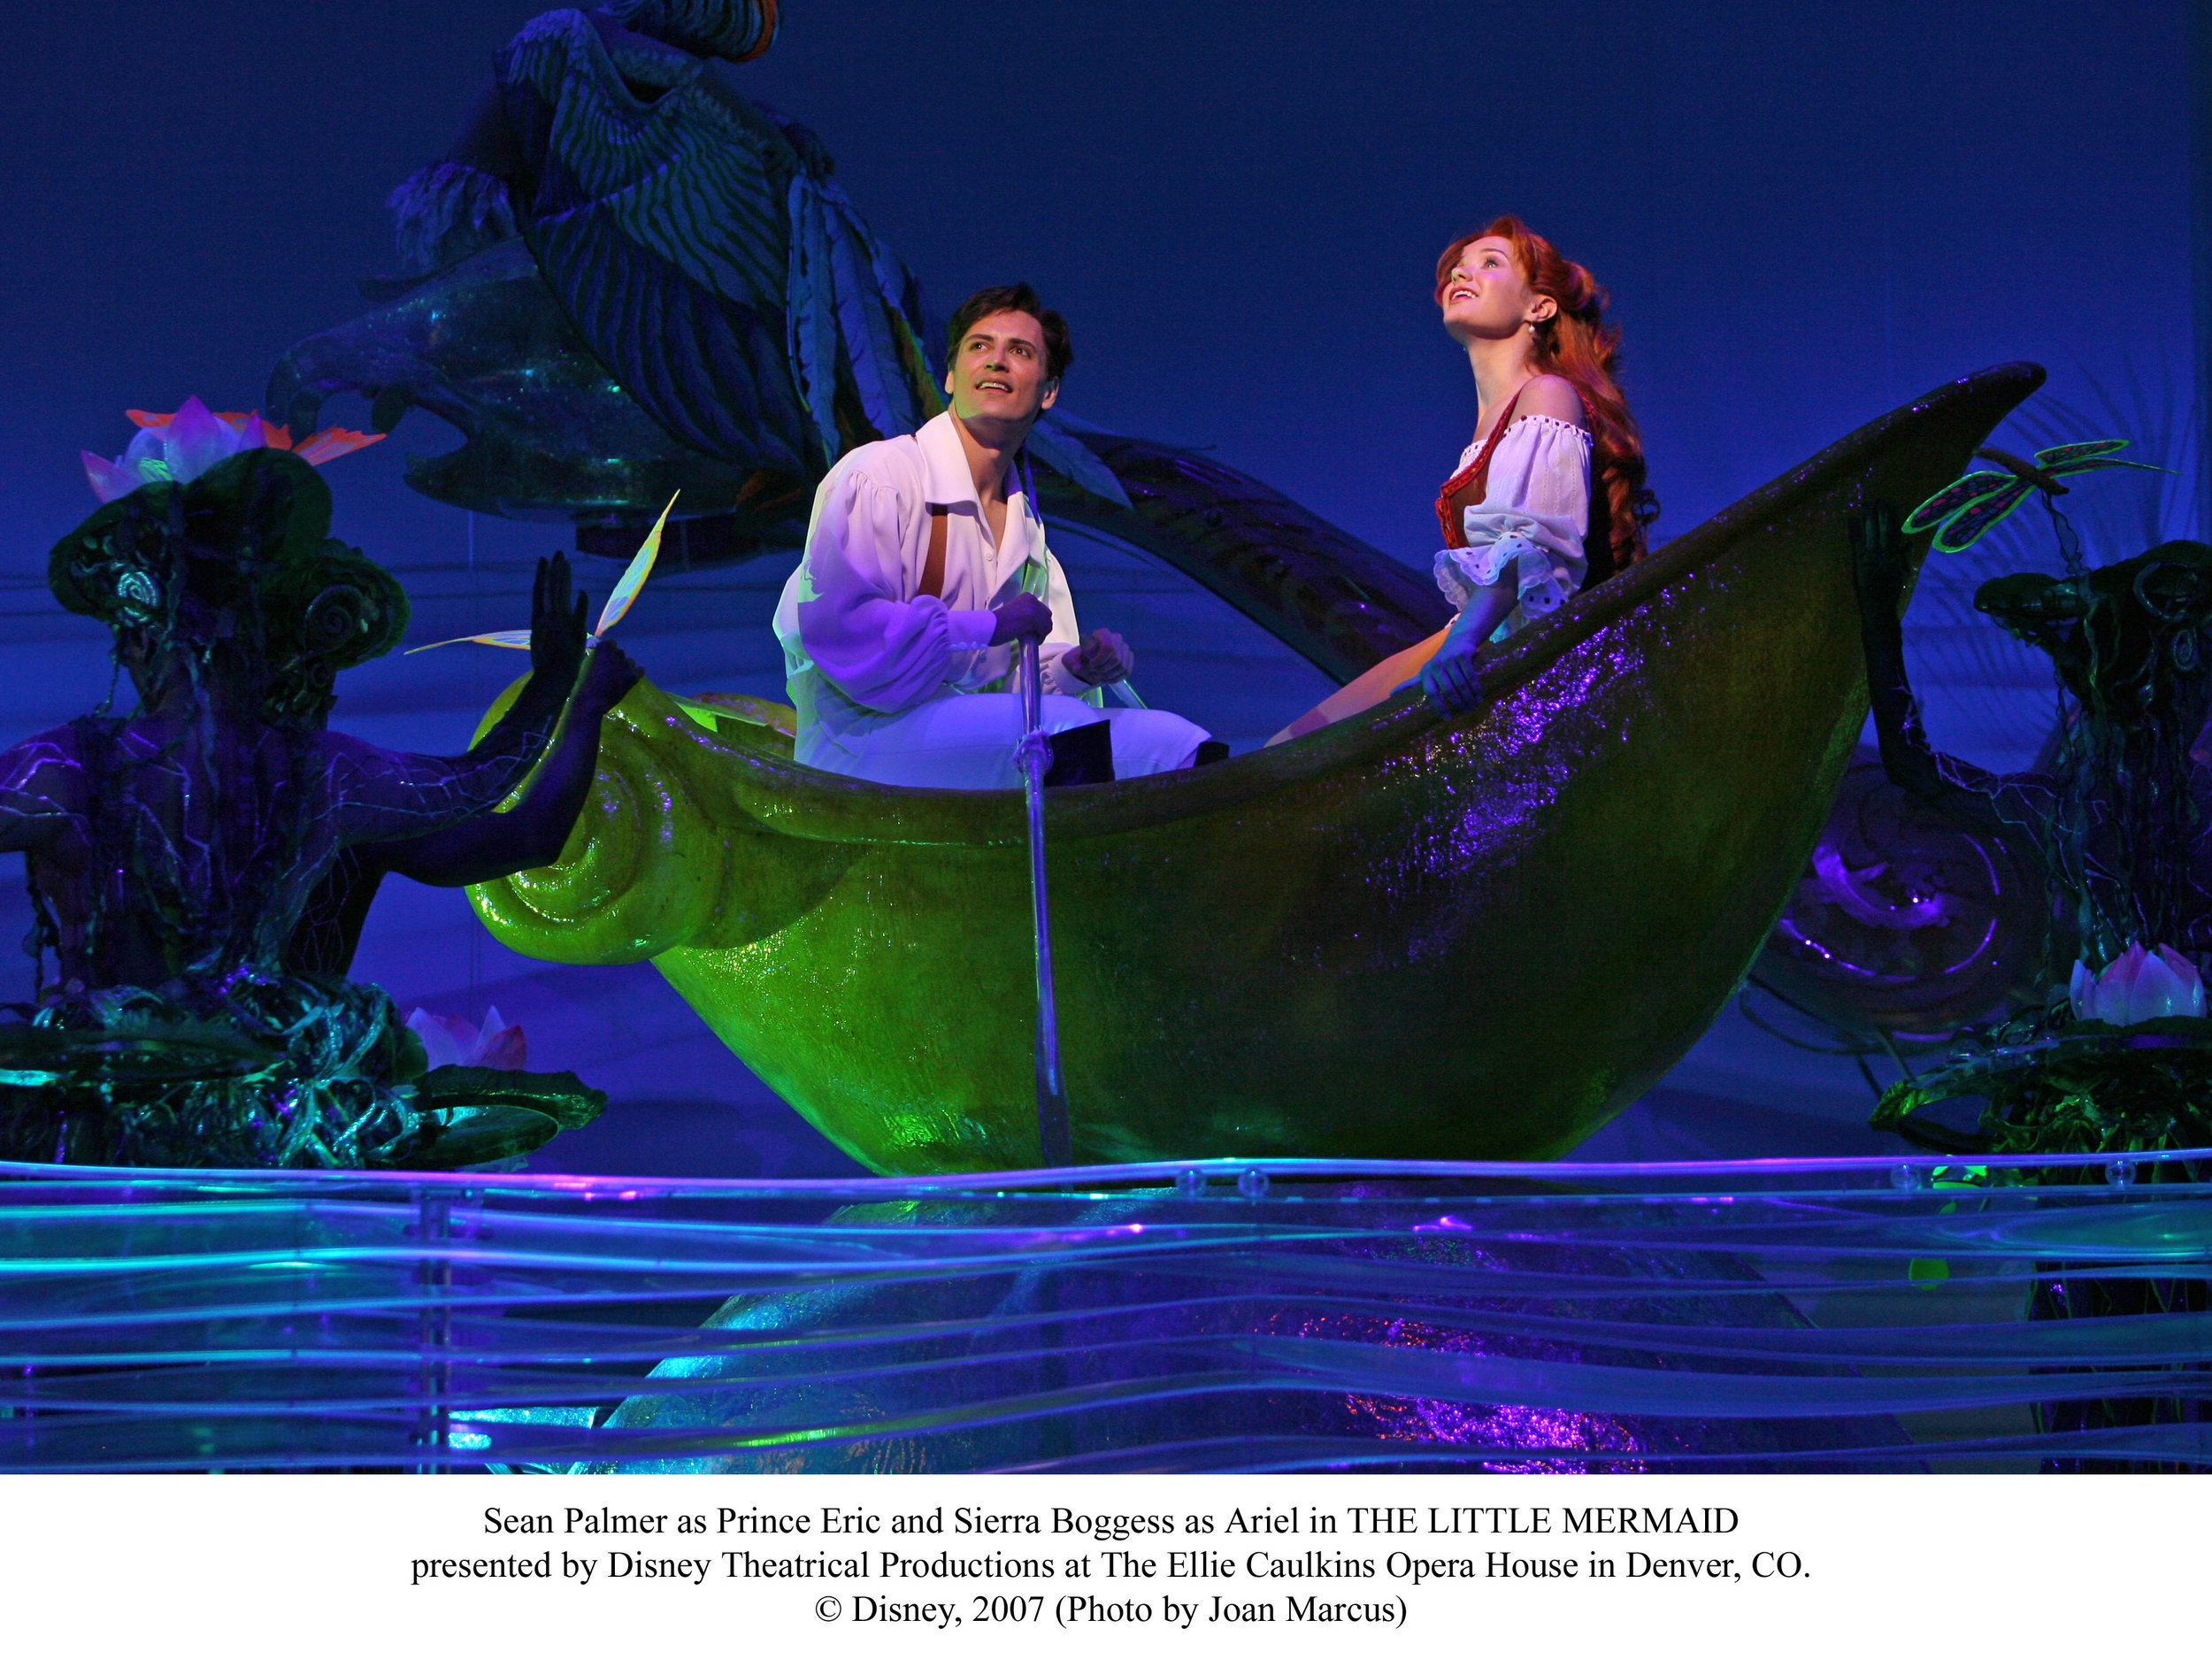 Sierra-Boggess-Little-Mermaid-Broadway-Sean and Sierra 0376-X.jpg